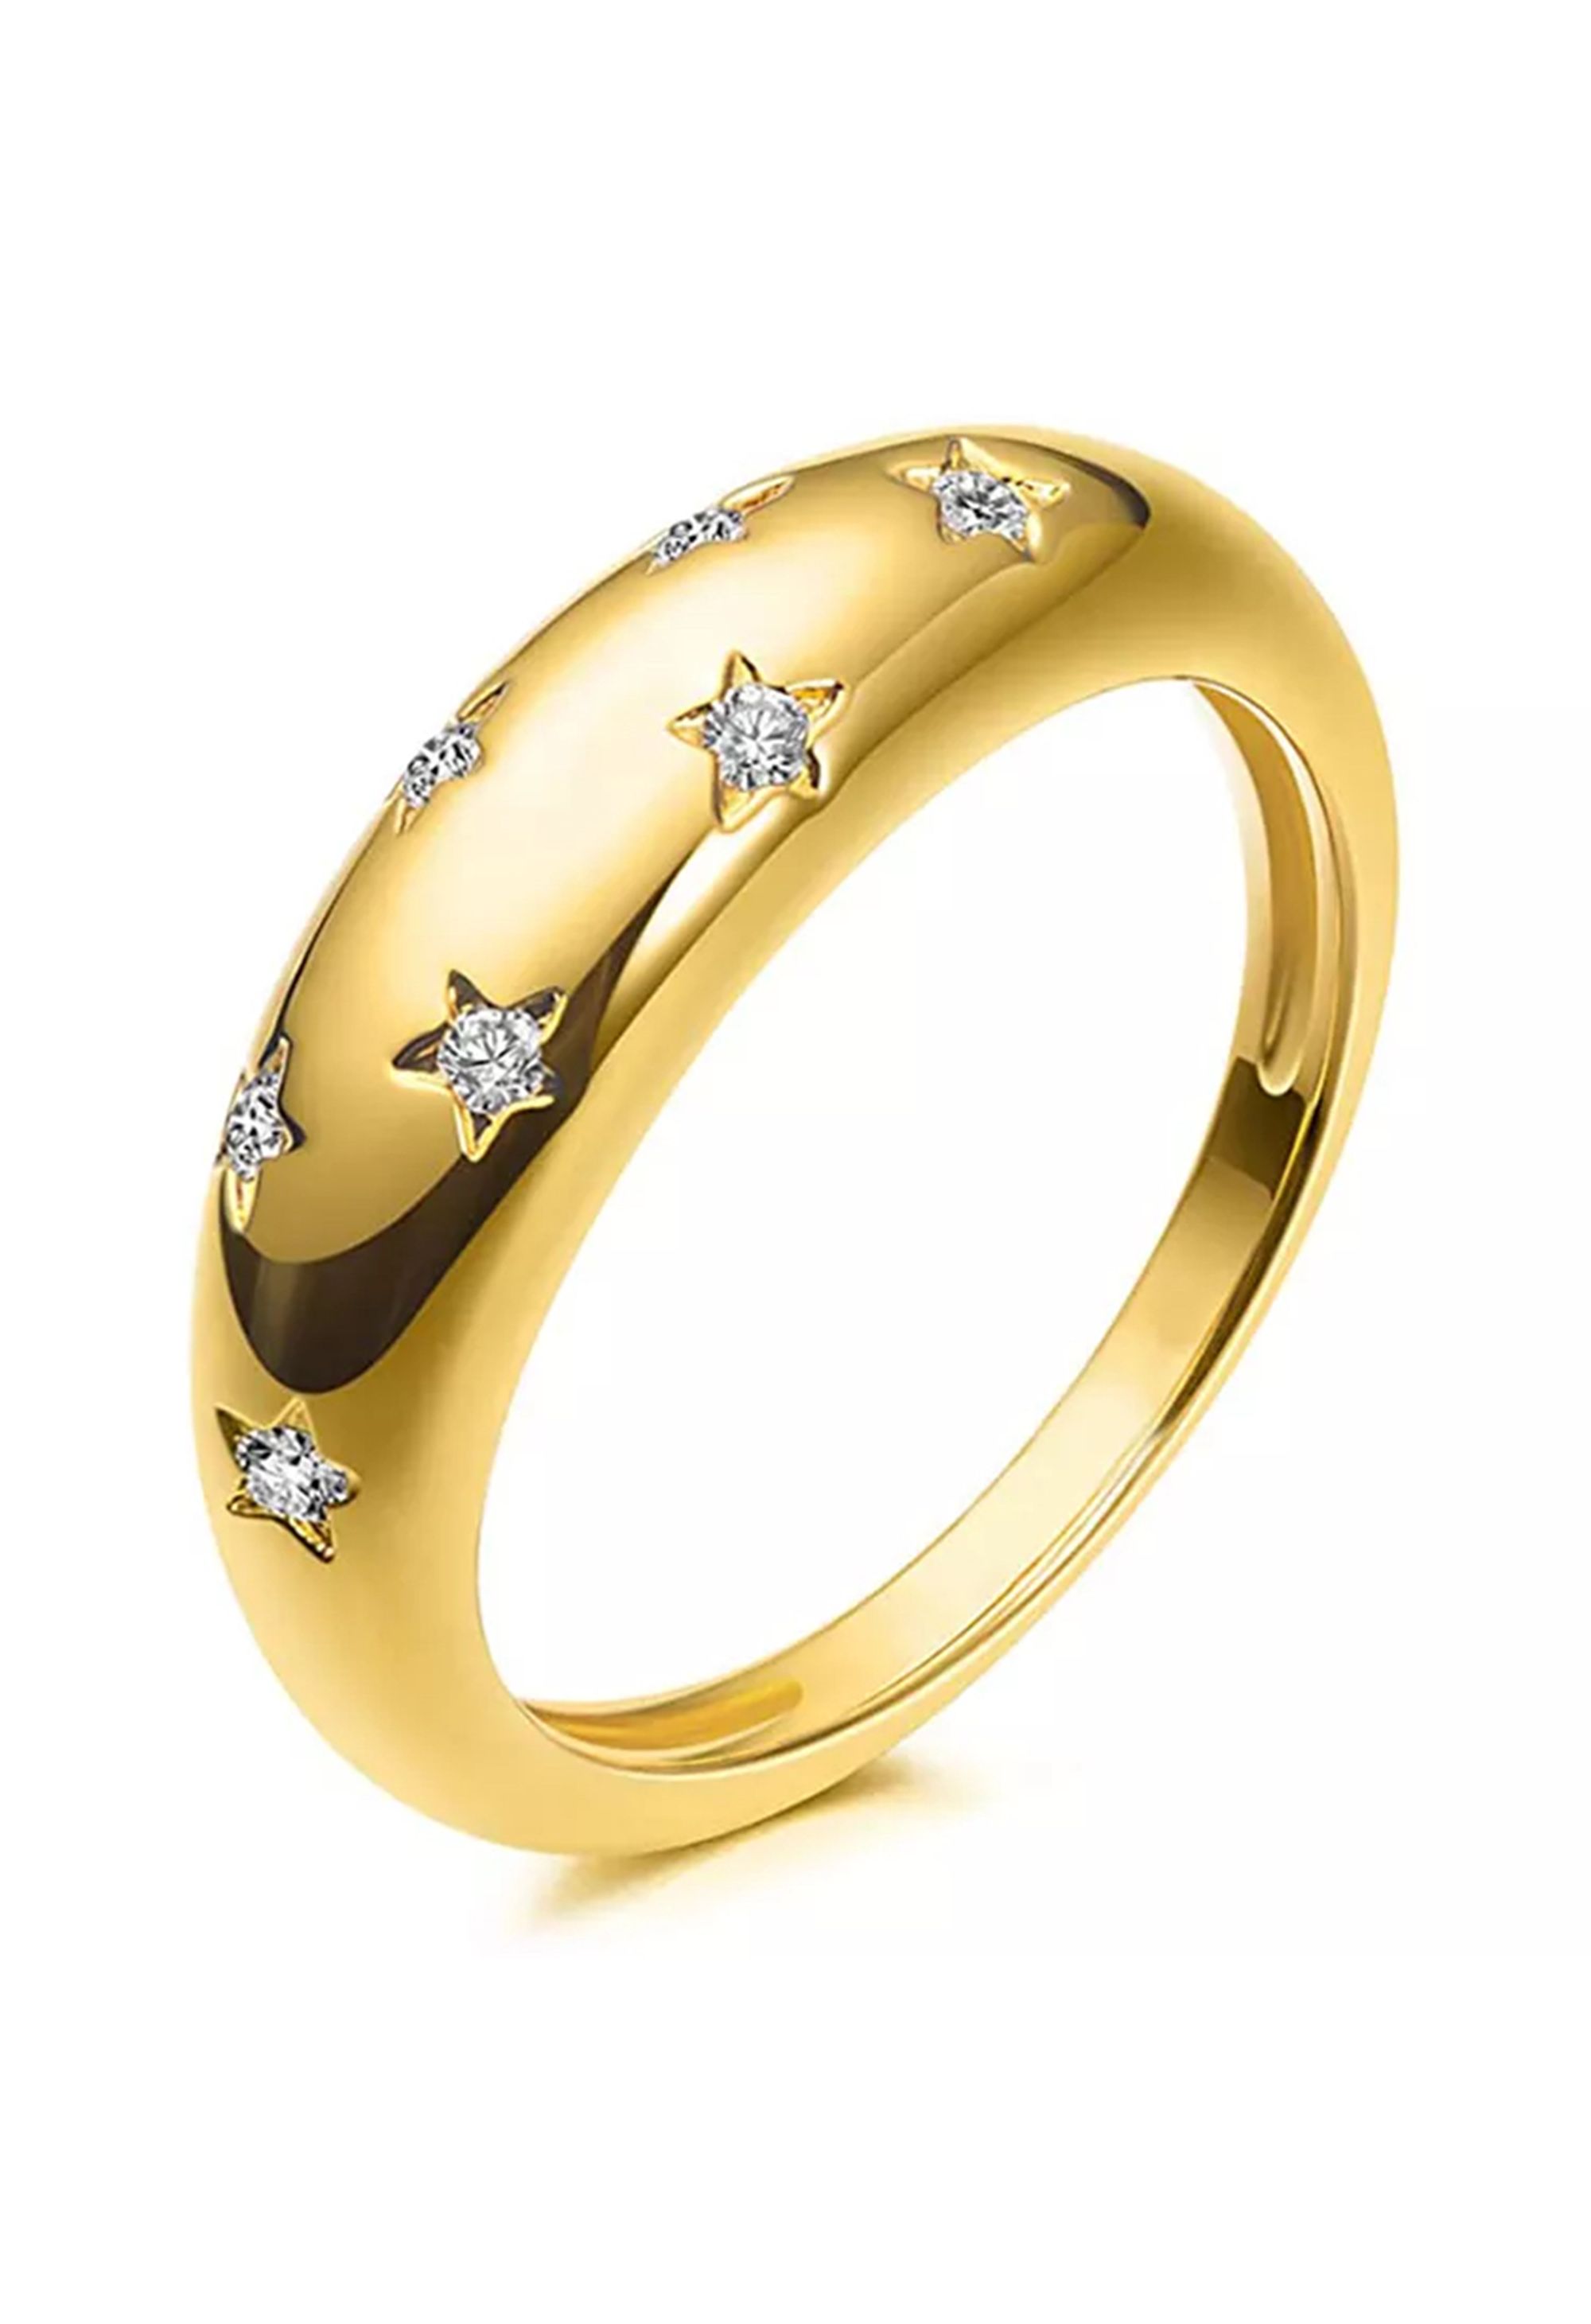 Aurora Statement Ring - Gold Vermeil - KESTAN